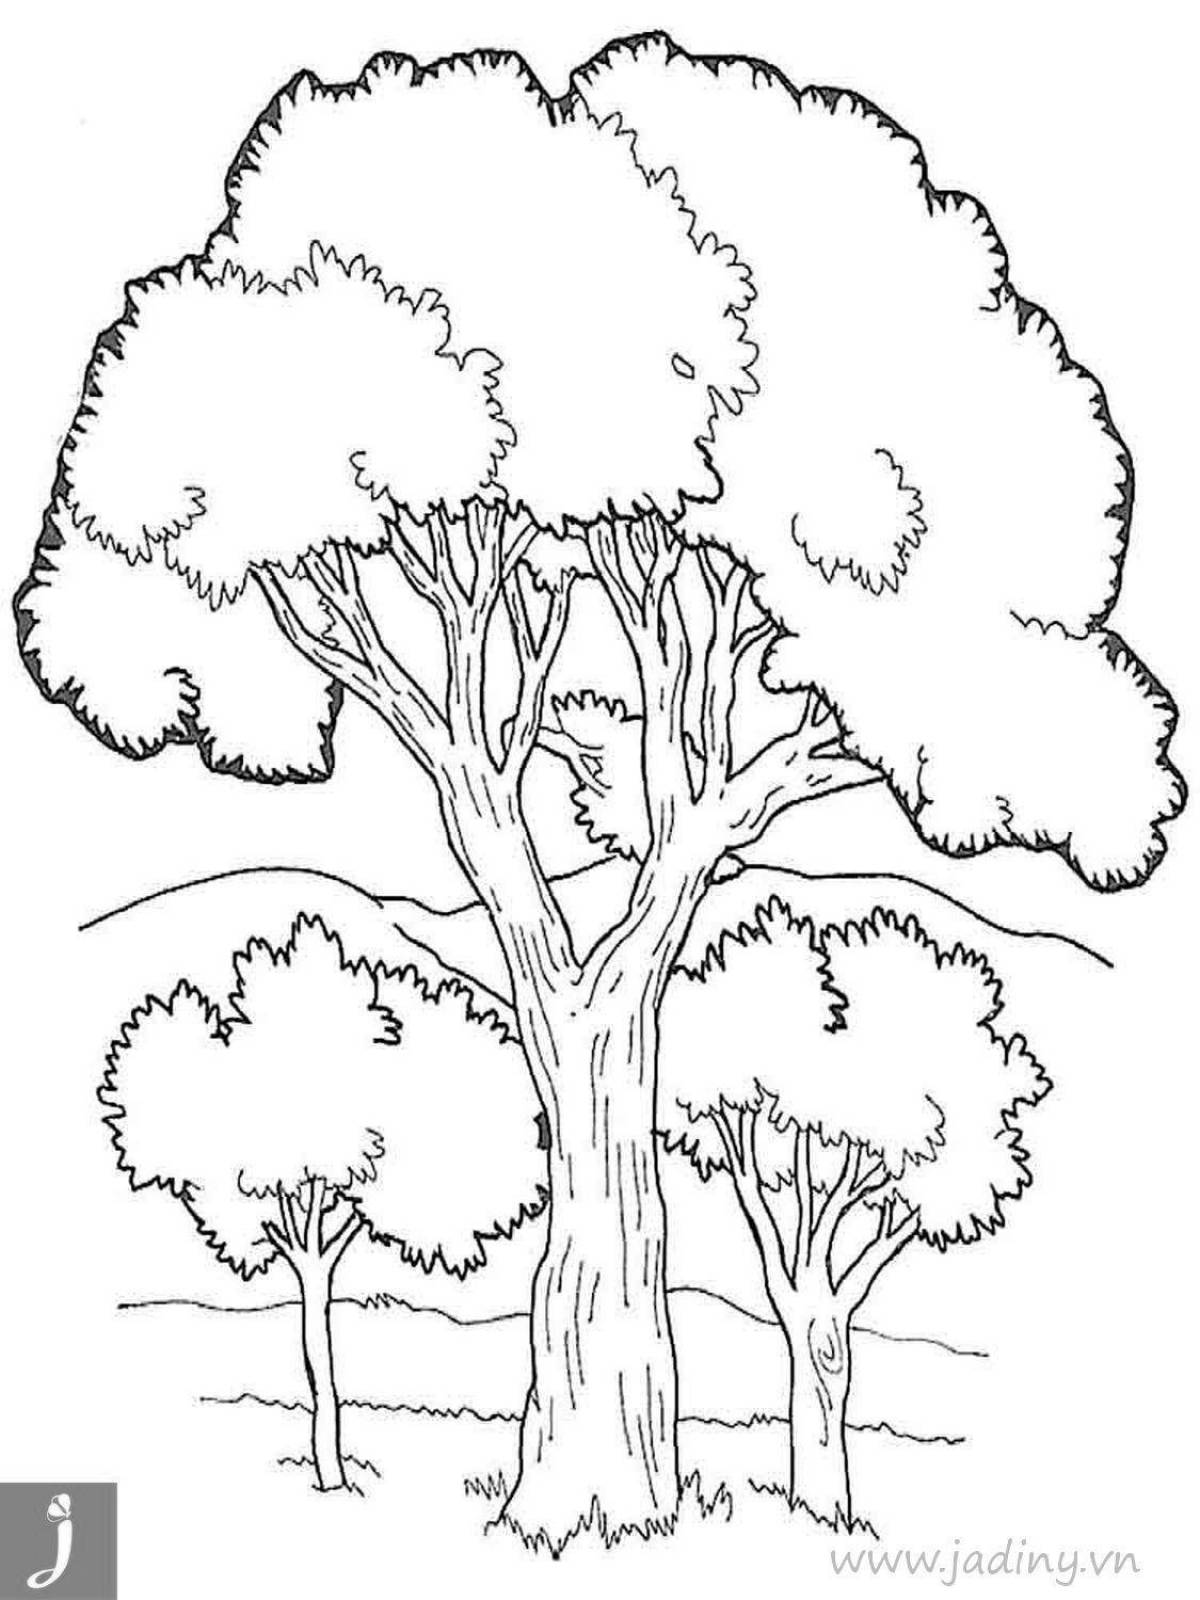 Рисунок раскраска дерево с кроной